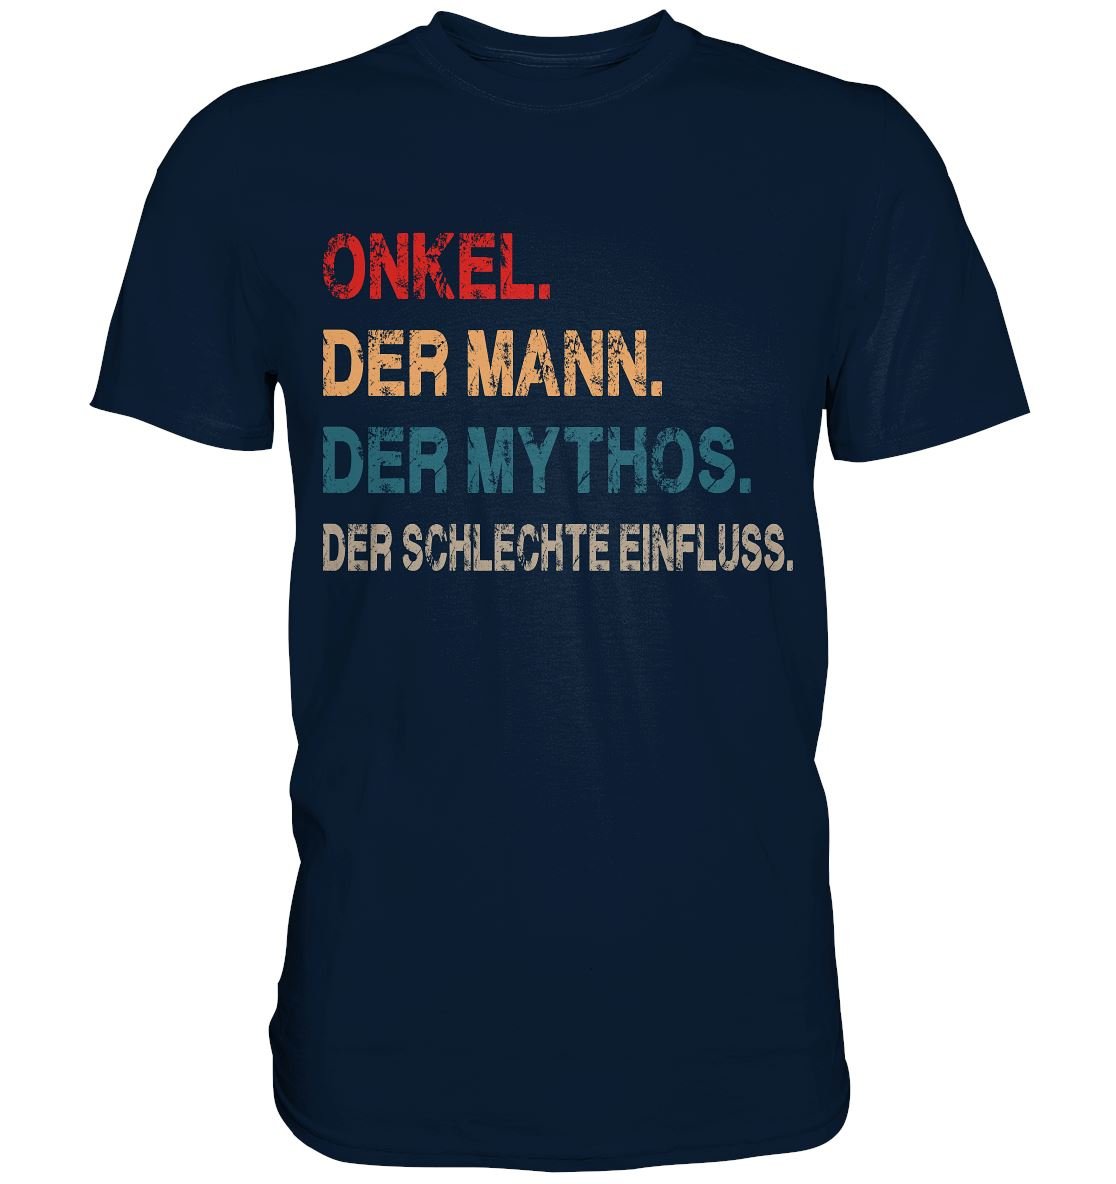 Onkel Der Mann Der Mythos Der schlechte Einfluss - Premium Shirt - BINYA